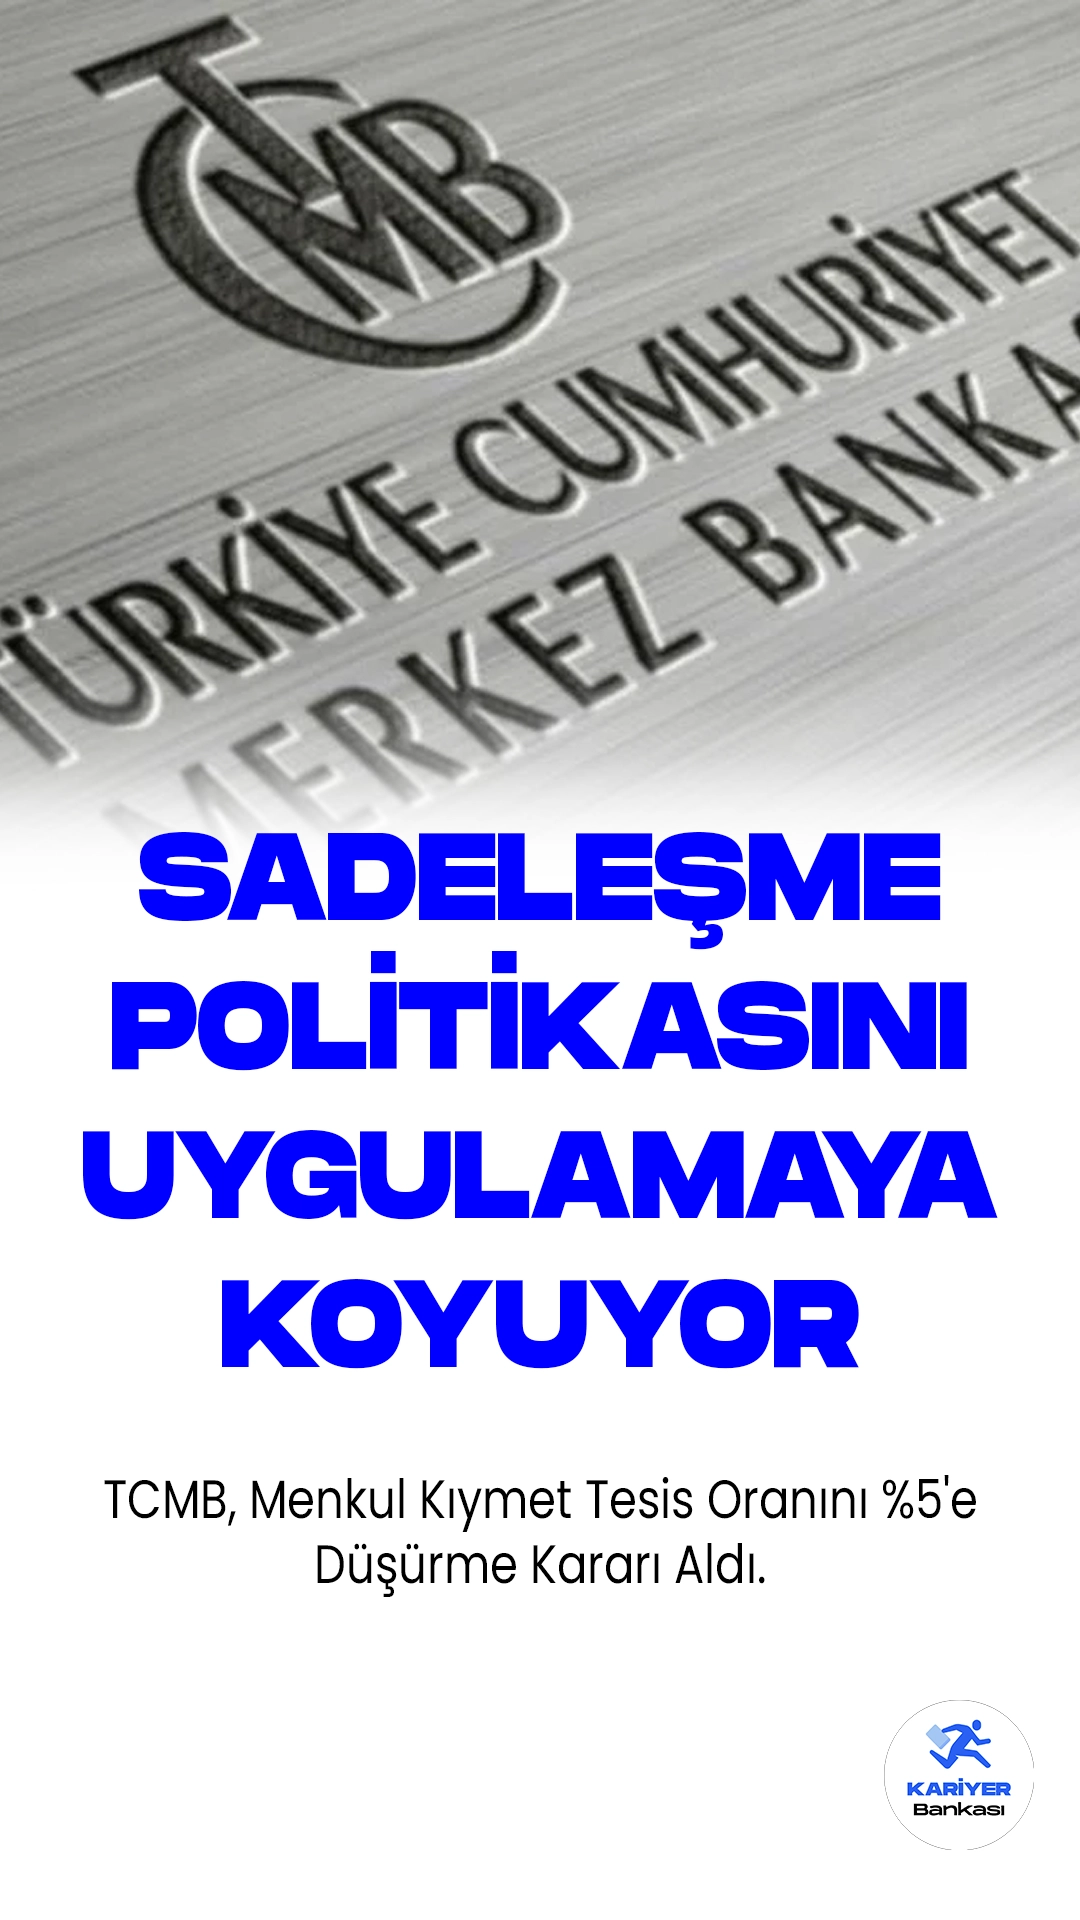 TCMB, Menkul Kıymet Tesis Oranını %5'e Düşürme Kararı Aldı.Türkiye Cumhuriyet Merkez Bankası (TCMB), sadeleştirme politikası çerçevesinde ilk adım olarak menkul kıymet tesis oranının yüzde 10'dan yüzde 5'e düşürülmesine karar verdiğini duyurdu. TCMB, Menkul Kıymet Tesisi Hakkında Tebliğ'de değişiklik yapılmasına dair tebliği Resmi Gazete'de yayımladı.